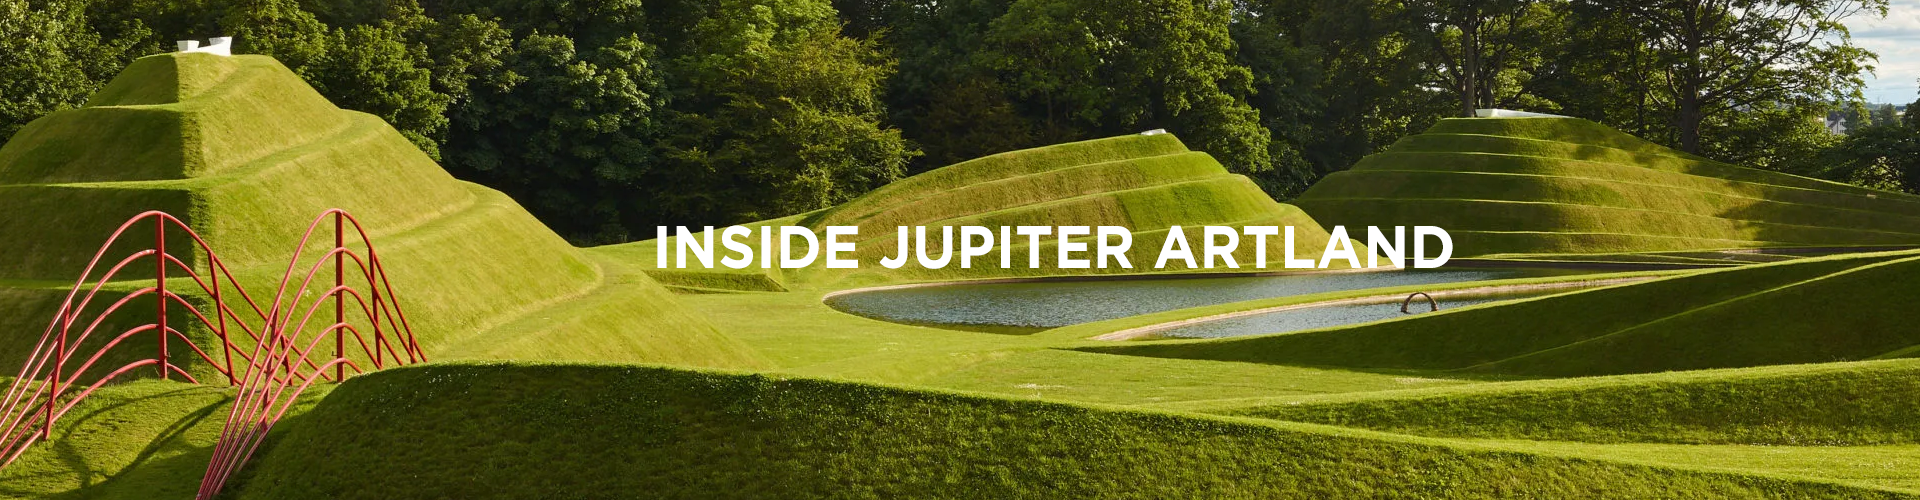 Inside Jupiter Artland